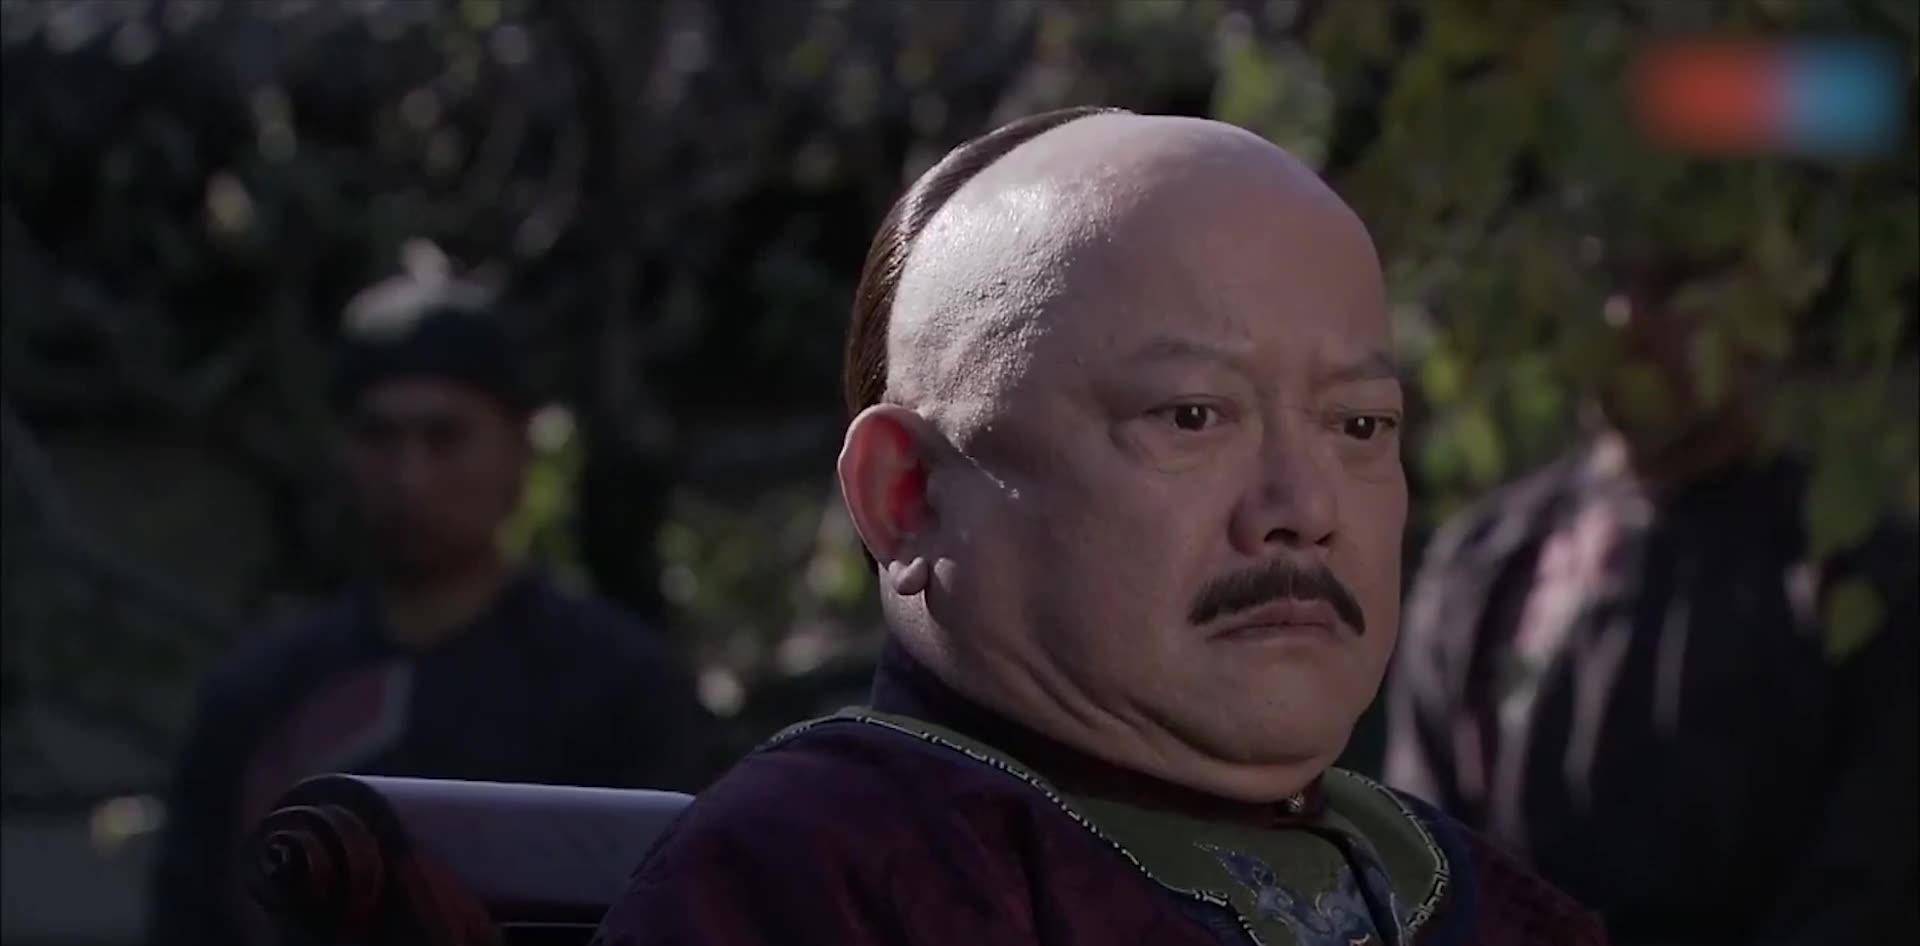 影视剧中的和珅又肥又丑,专家揭开其真实容貌:是清朝第一美男子